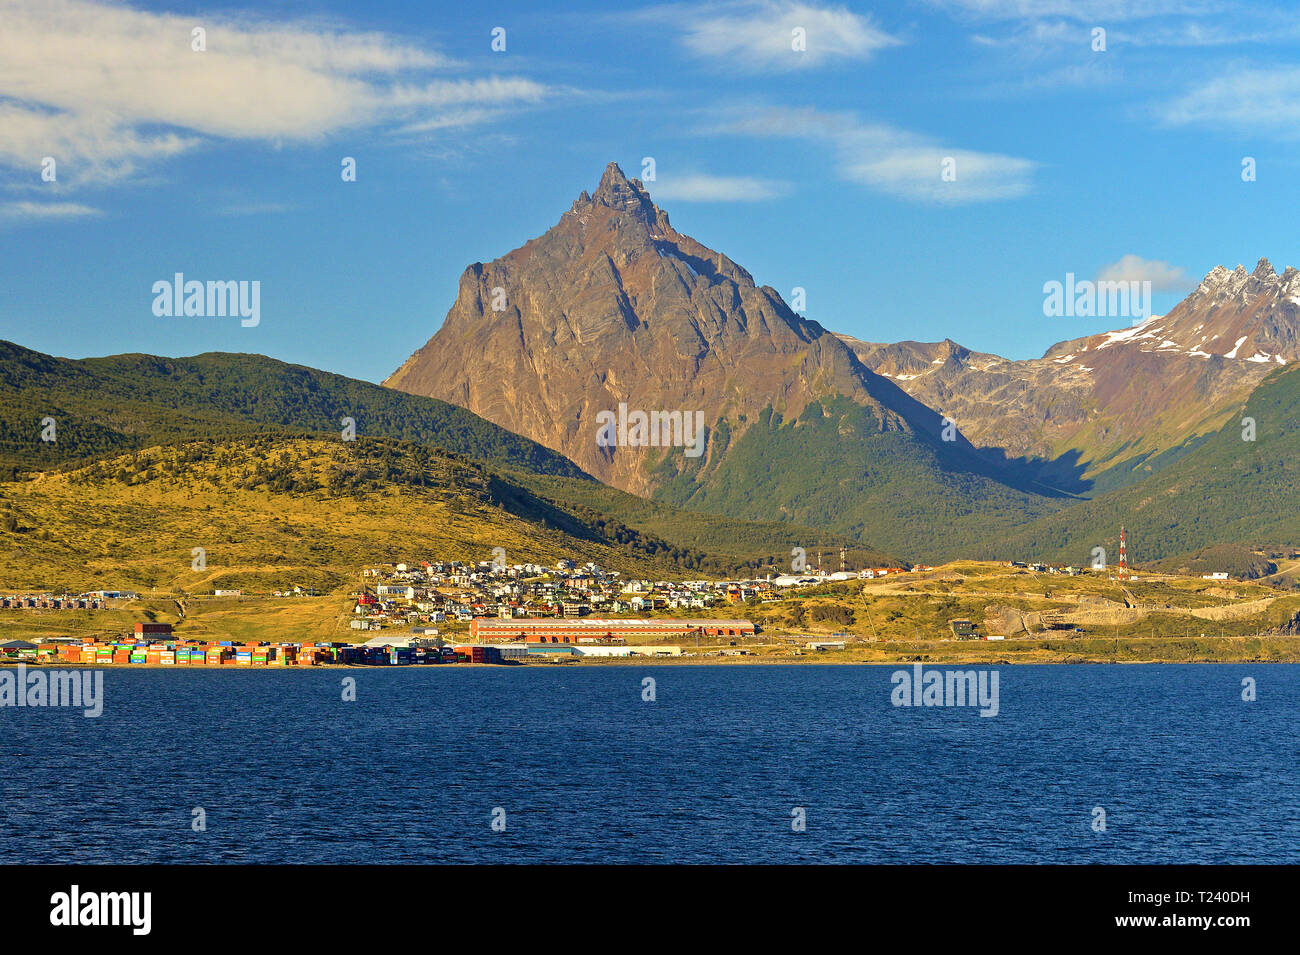 Ushuaia, la ville la plus au sud du monde, le Canal de Beagle et la cordillère des Andes s'élevant au-dessus, Ushuaia, Tierra del Fuego, Argentina Banque D'Images